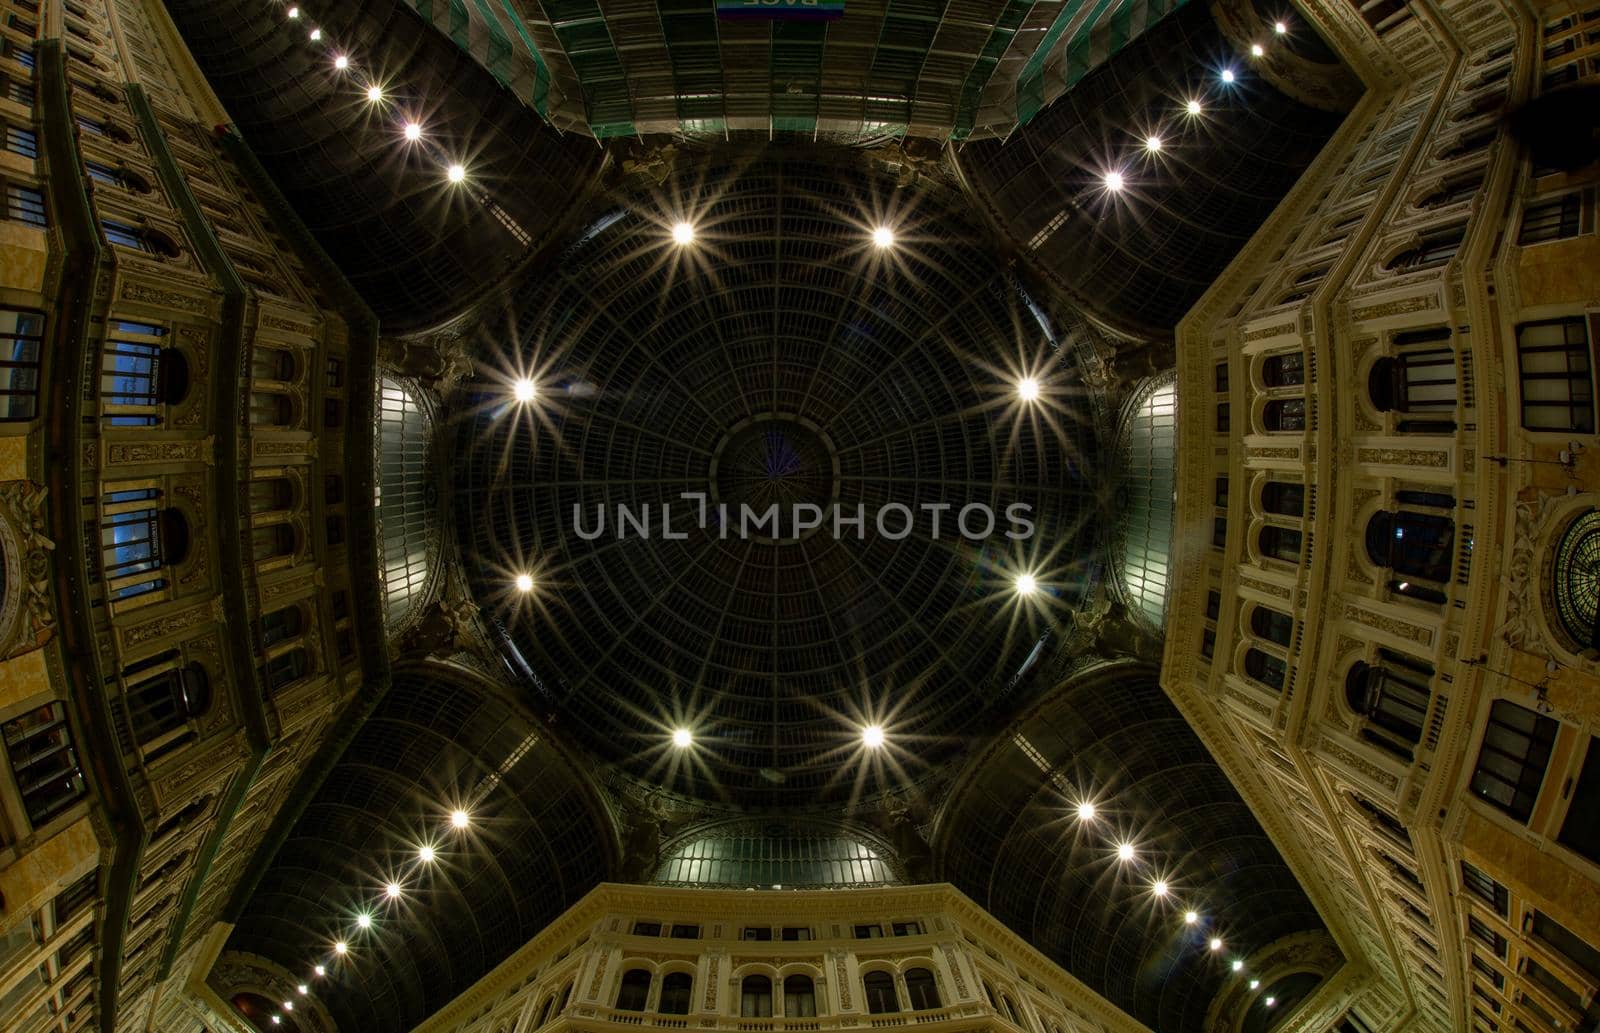 Galleria Umberto Naples Italy by mugurphoto